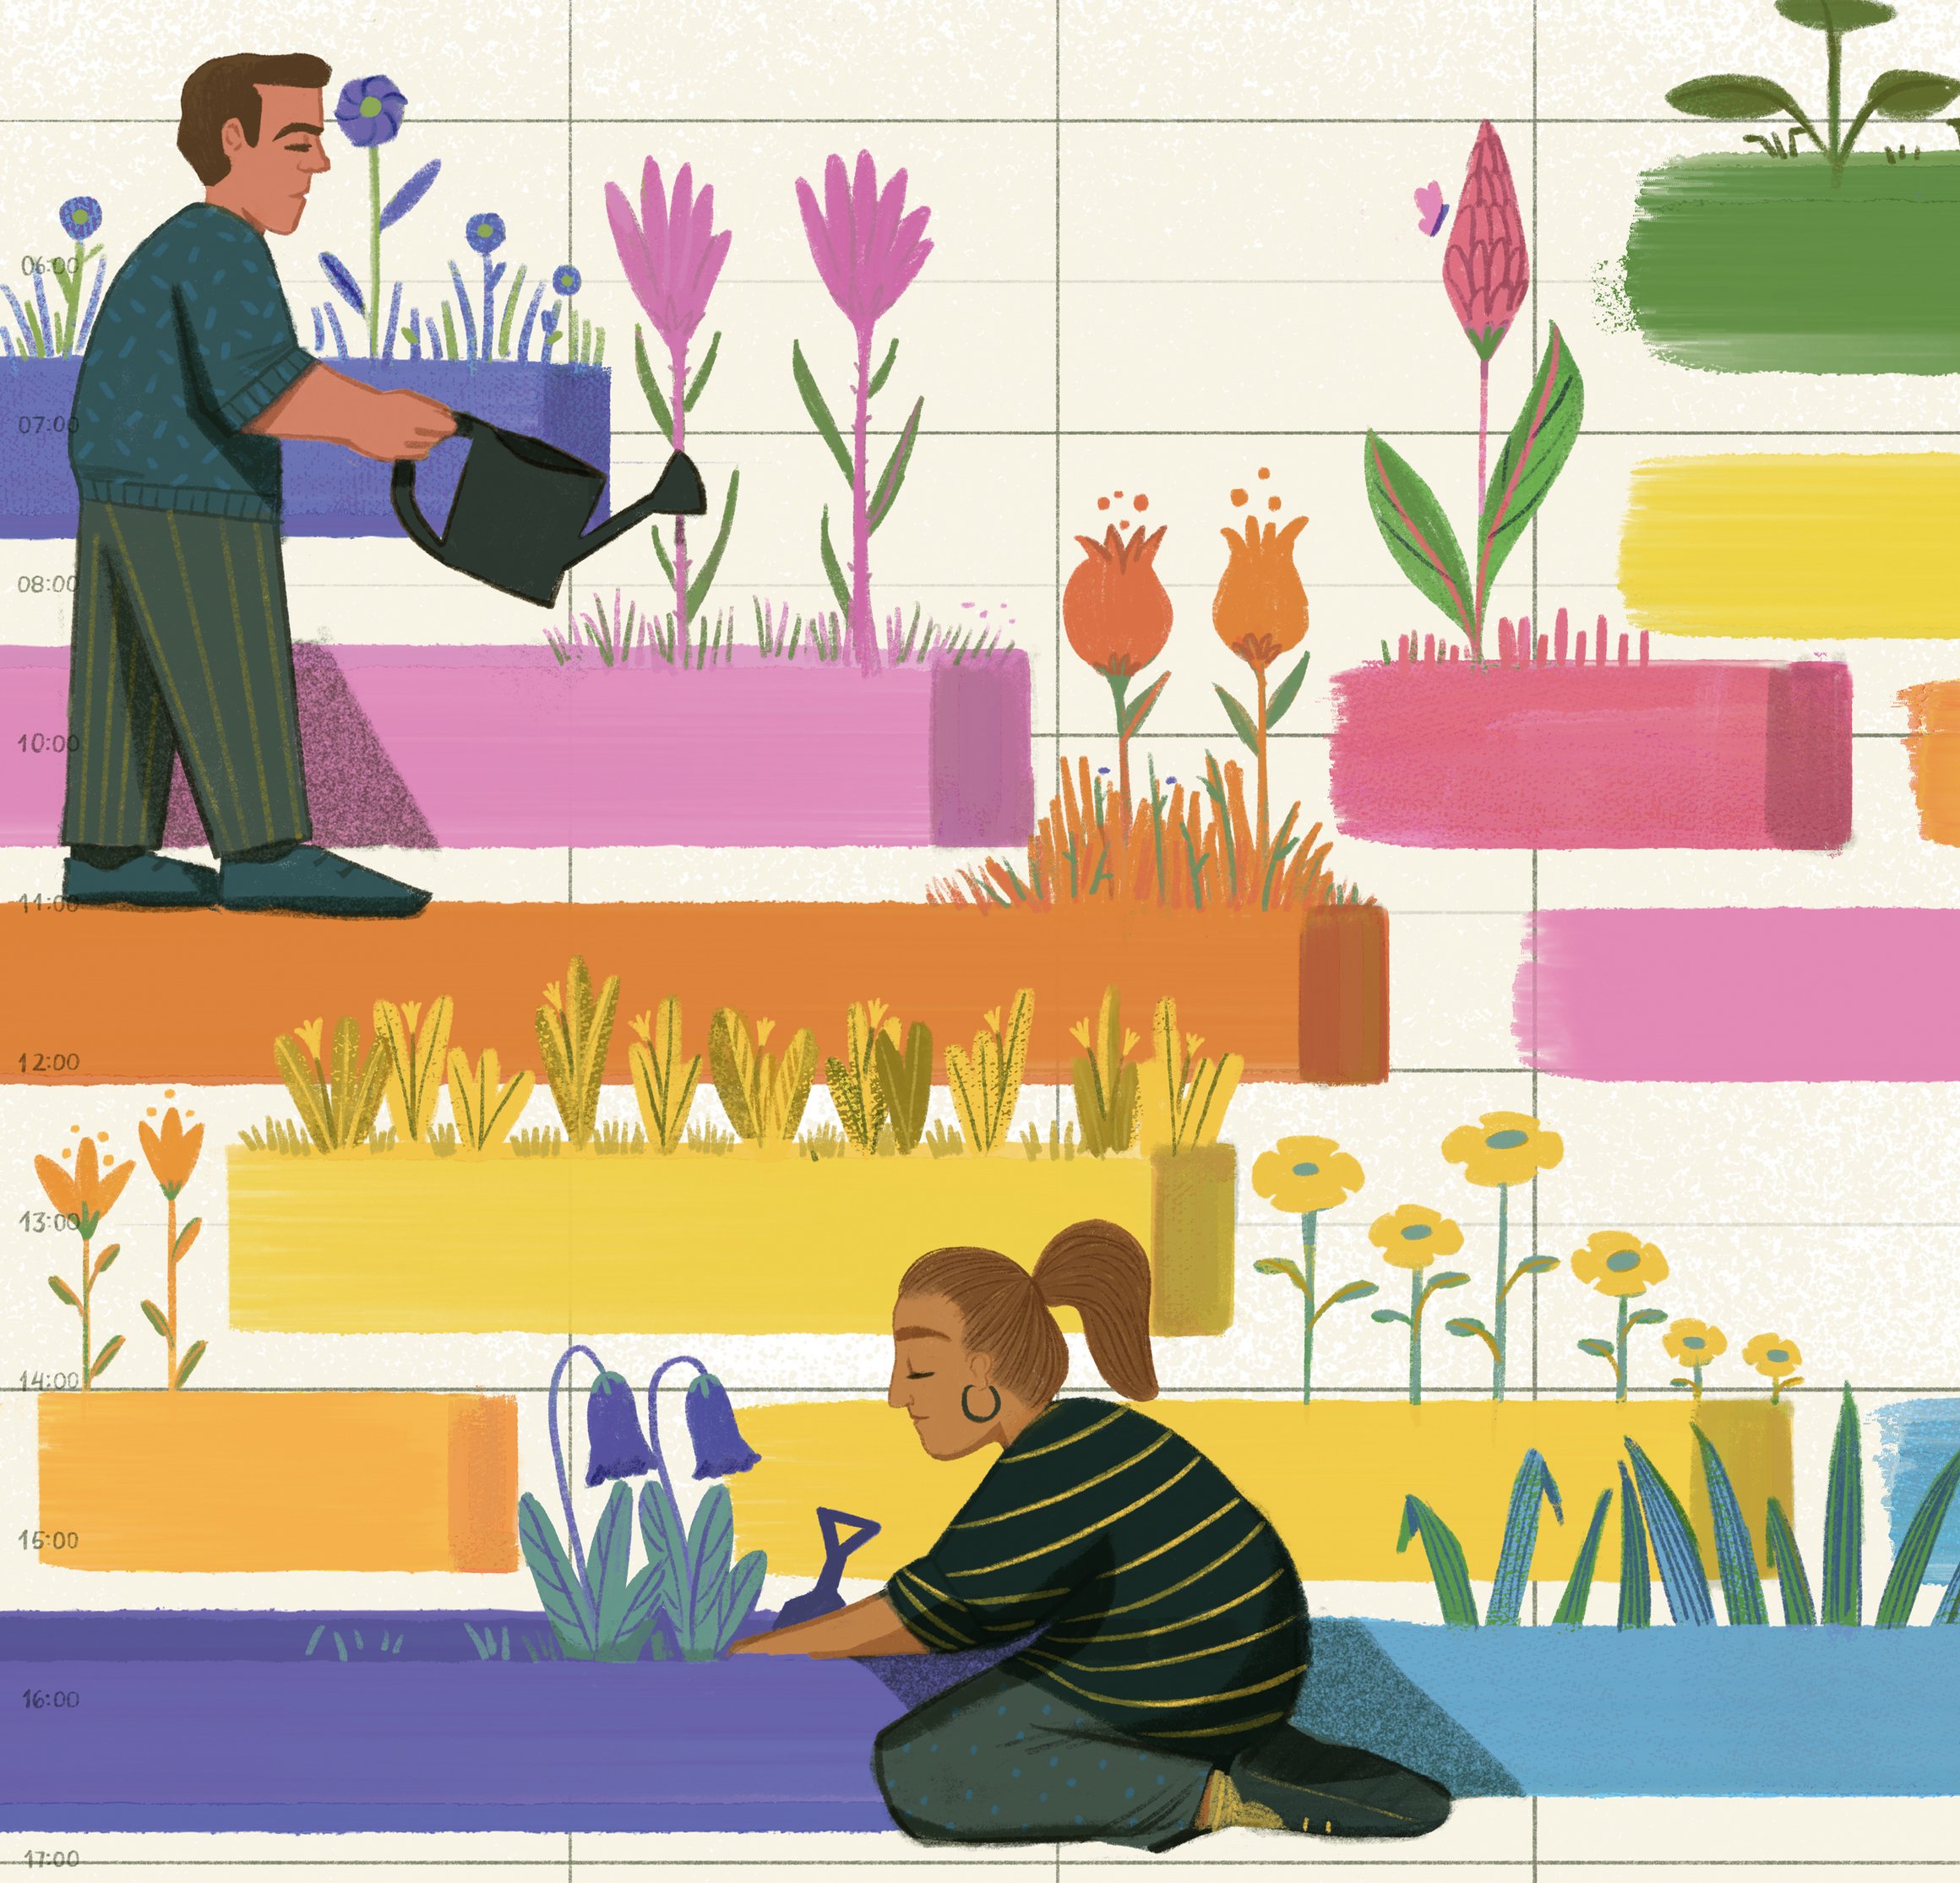 Die Illustration zeigt zwei Personen, die in einem bunten Garten gärtnern.